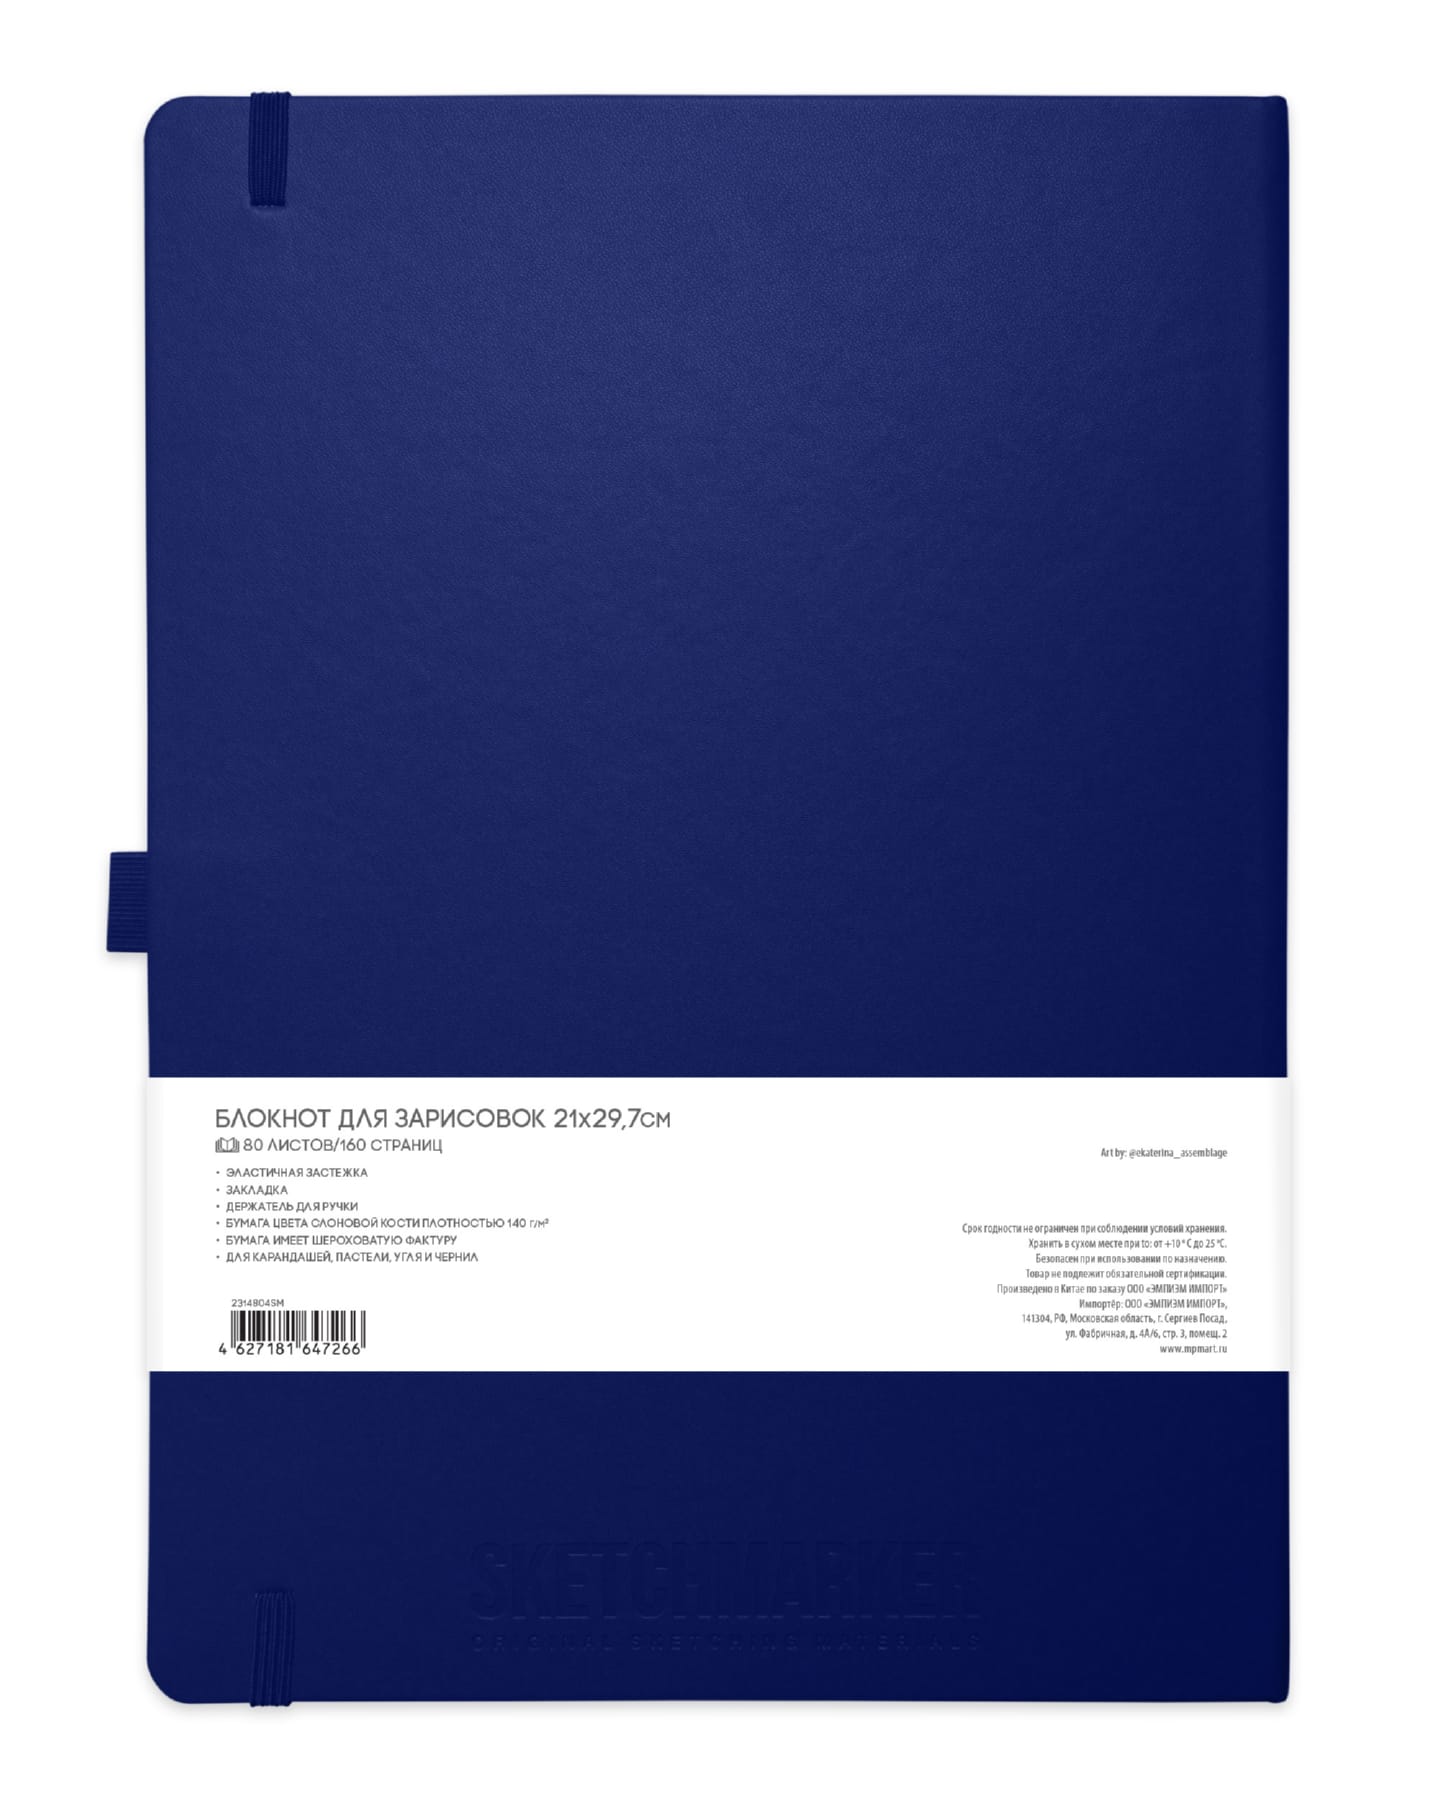 Блокнот для зарисовок Sketchmarker 140г/кв.м 21*30см 80л твердая обложка Королевский синий